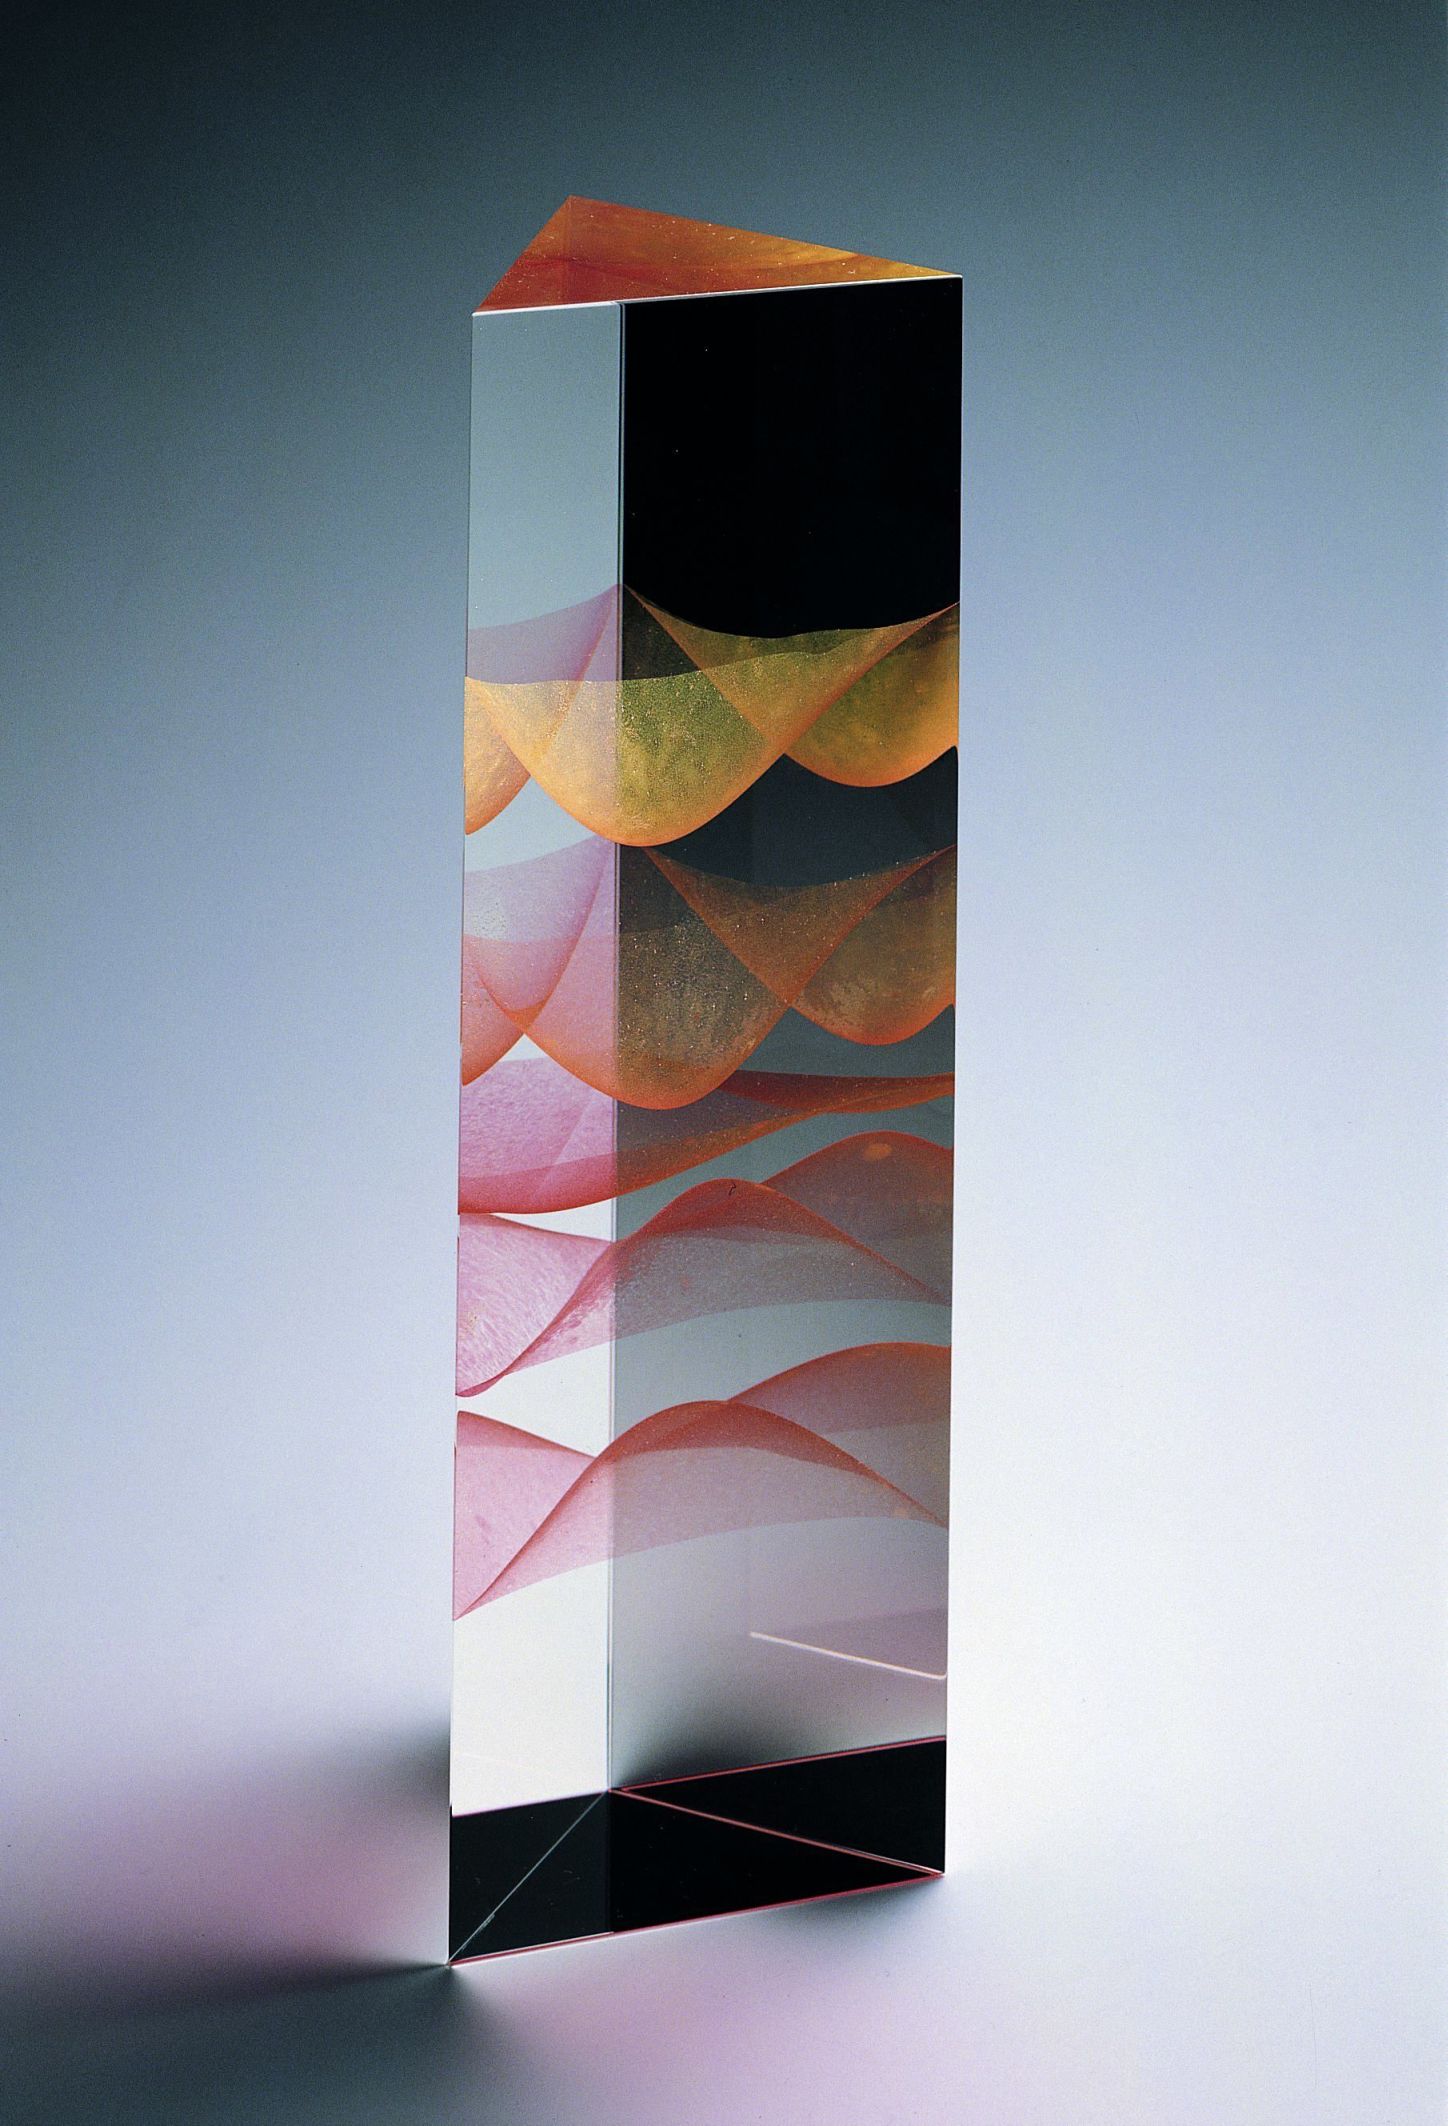  duny, v 30 cm, tavená optika, 1997 